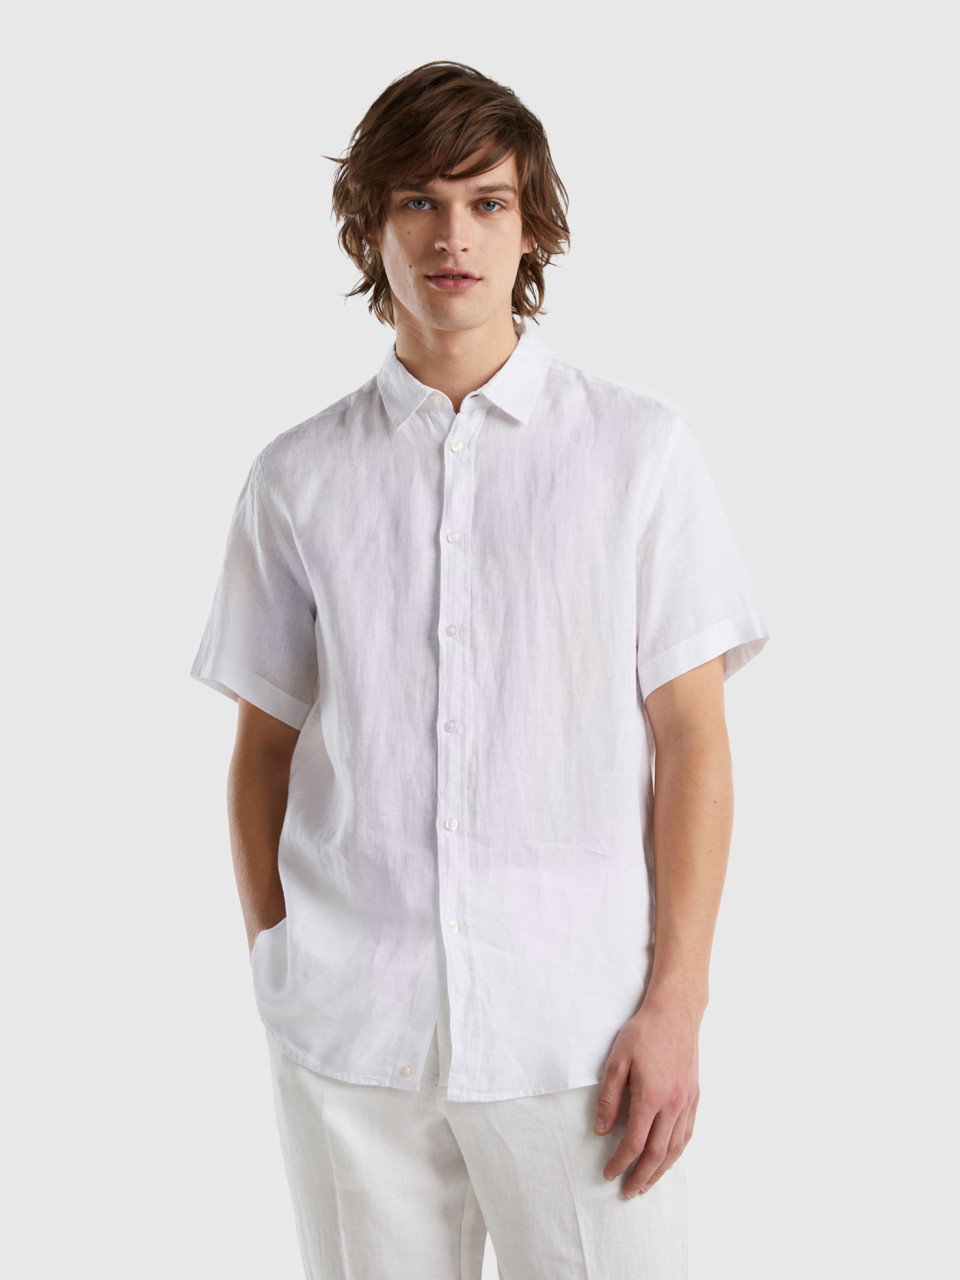 Benetton, 100% Linen Short Sleeve Shirt, White, Men